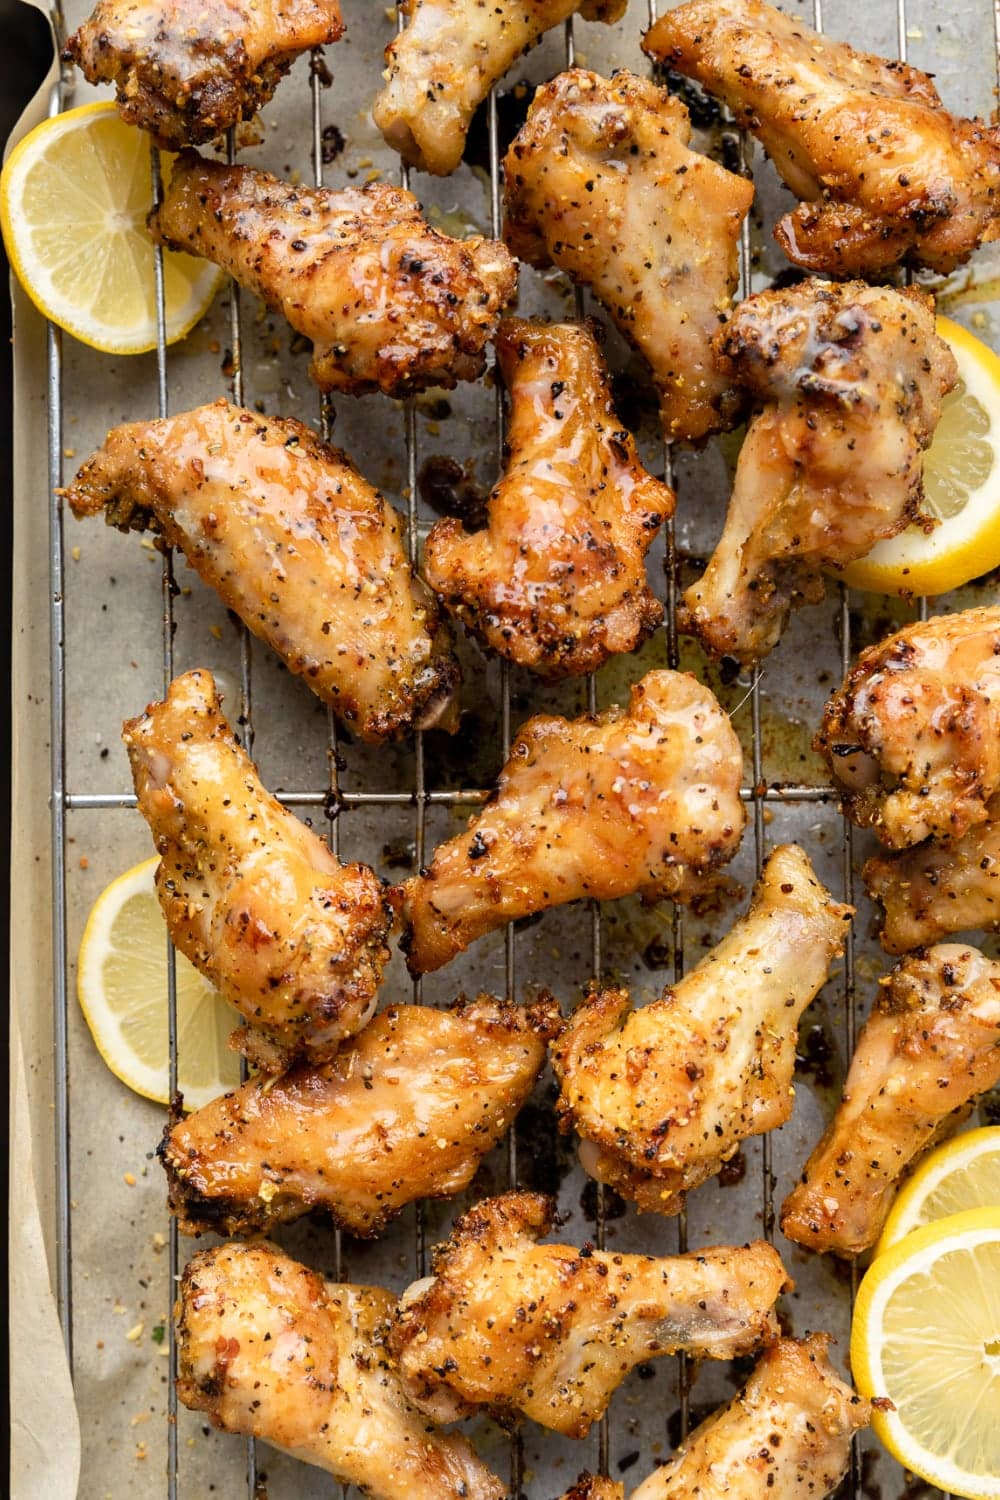 Chicken wings with lemon pepper seasoning on a roasting rack.